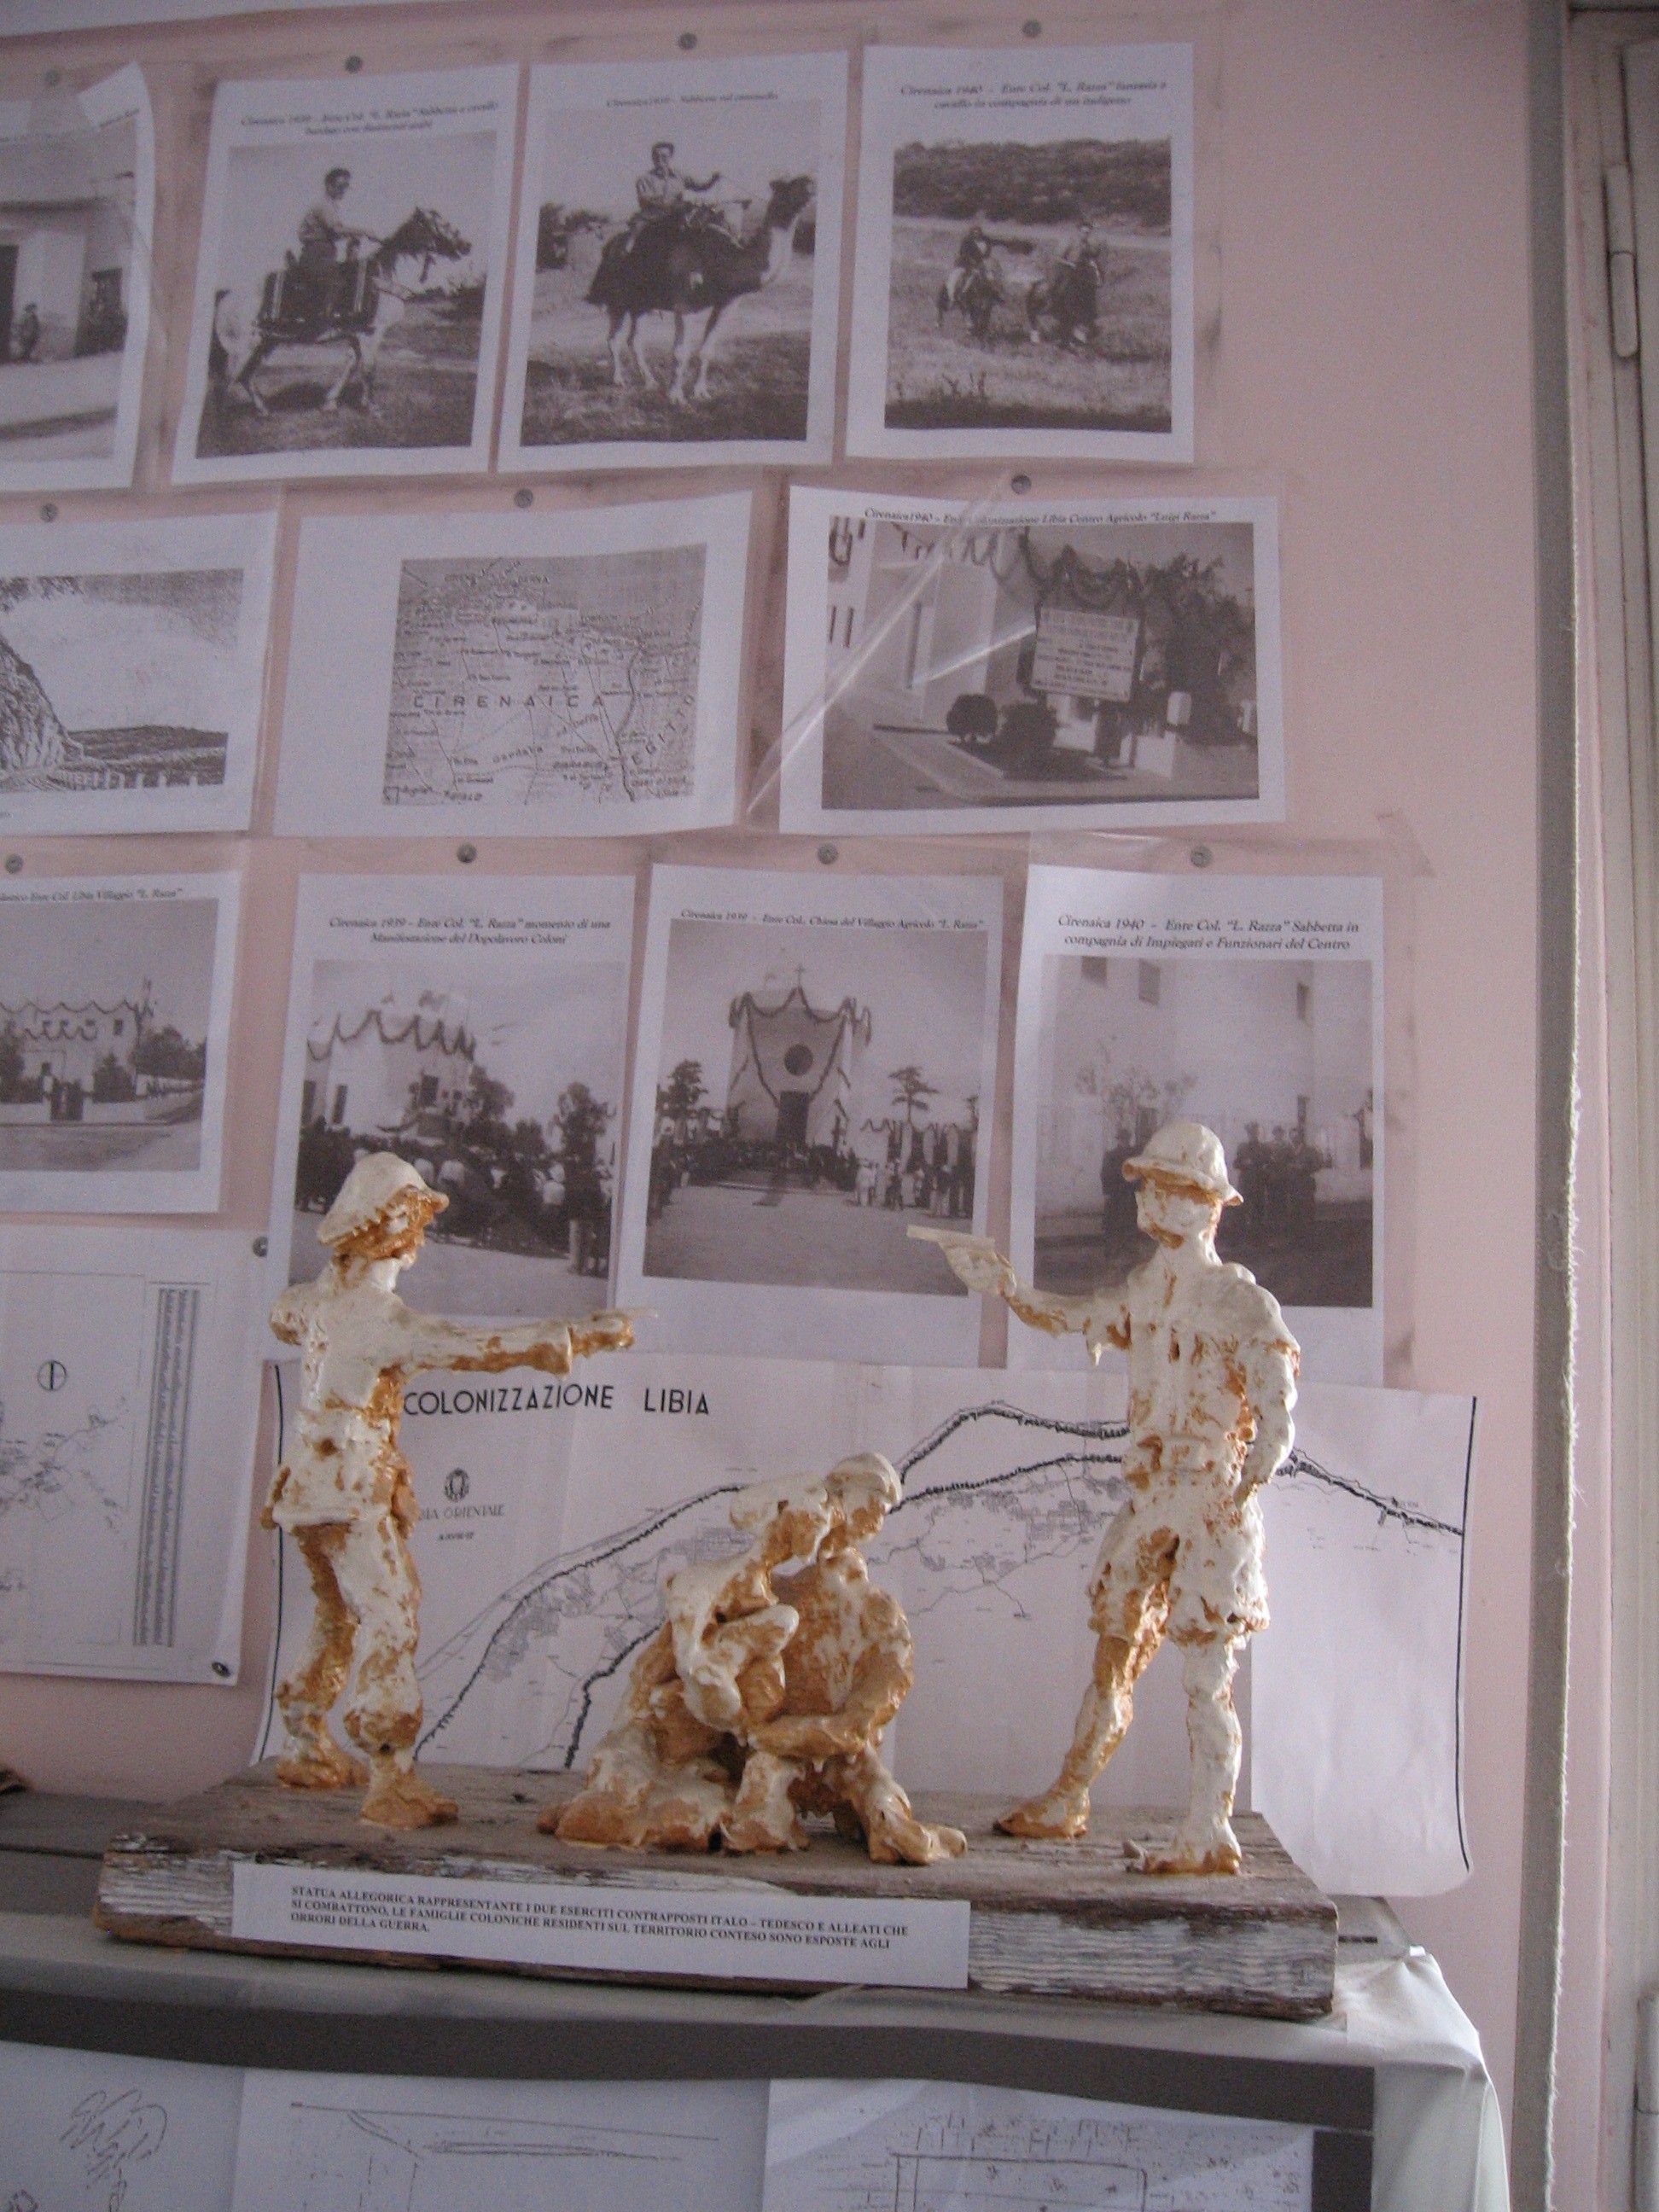 Statua allegorica di Paolo Sabbetta che rappresenta i due eserciti contrapposti italo-tedeschi e alleati che si combattono. Le famiglie coloniche residenti sul territorio sono esposte agli orrori della guerra.